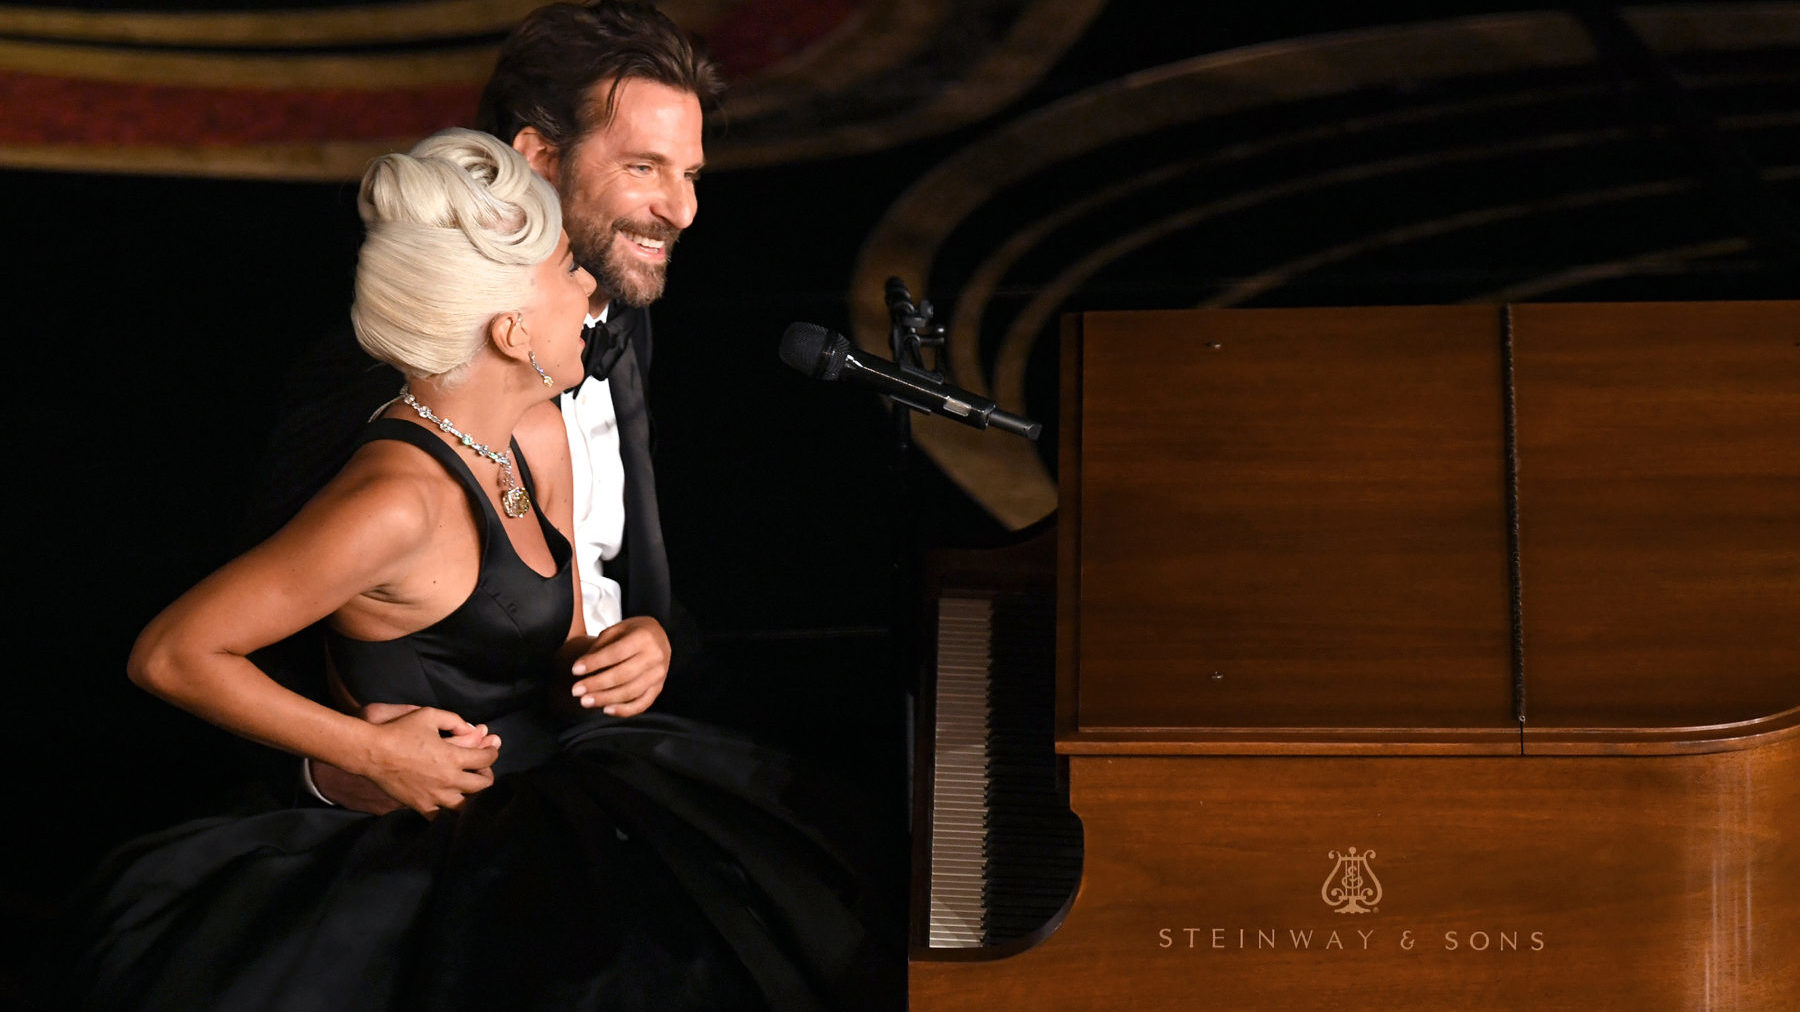 Lady Gaga Oscar 2019